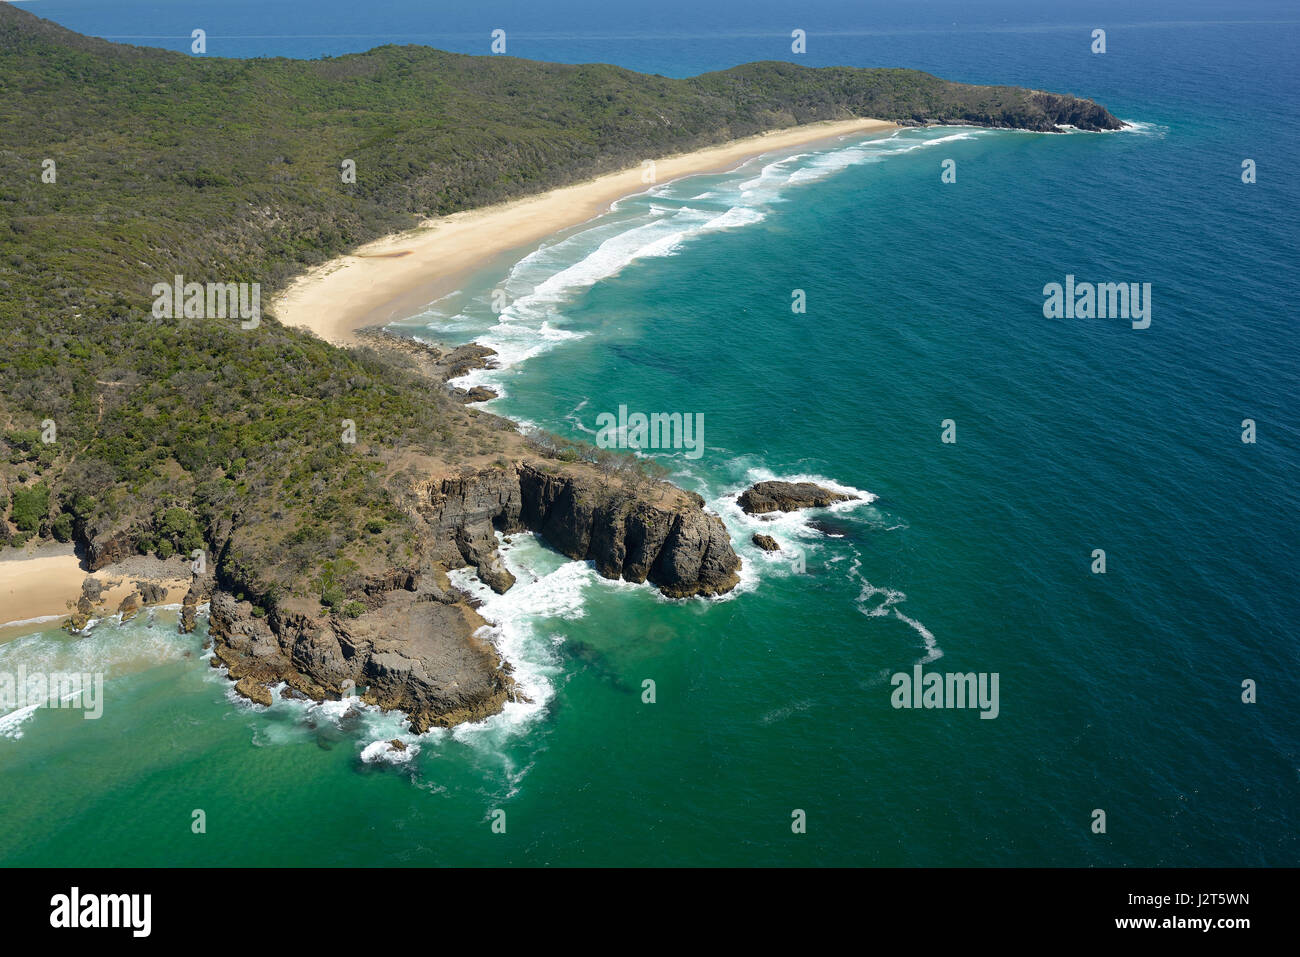 DEVIL'S CUCINA (a forma di U affioramento roccioso) e Alessandria Bay (Vista aerea). Teste di Noosa National Park, Sunshine Coast, Queensland, Australia. Foto Stock